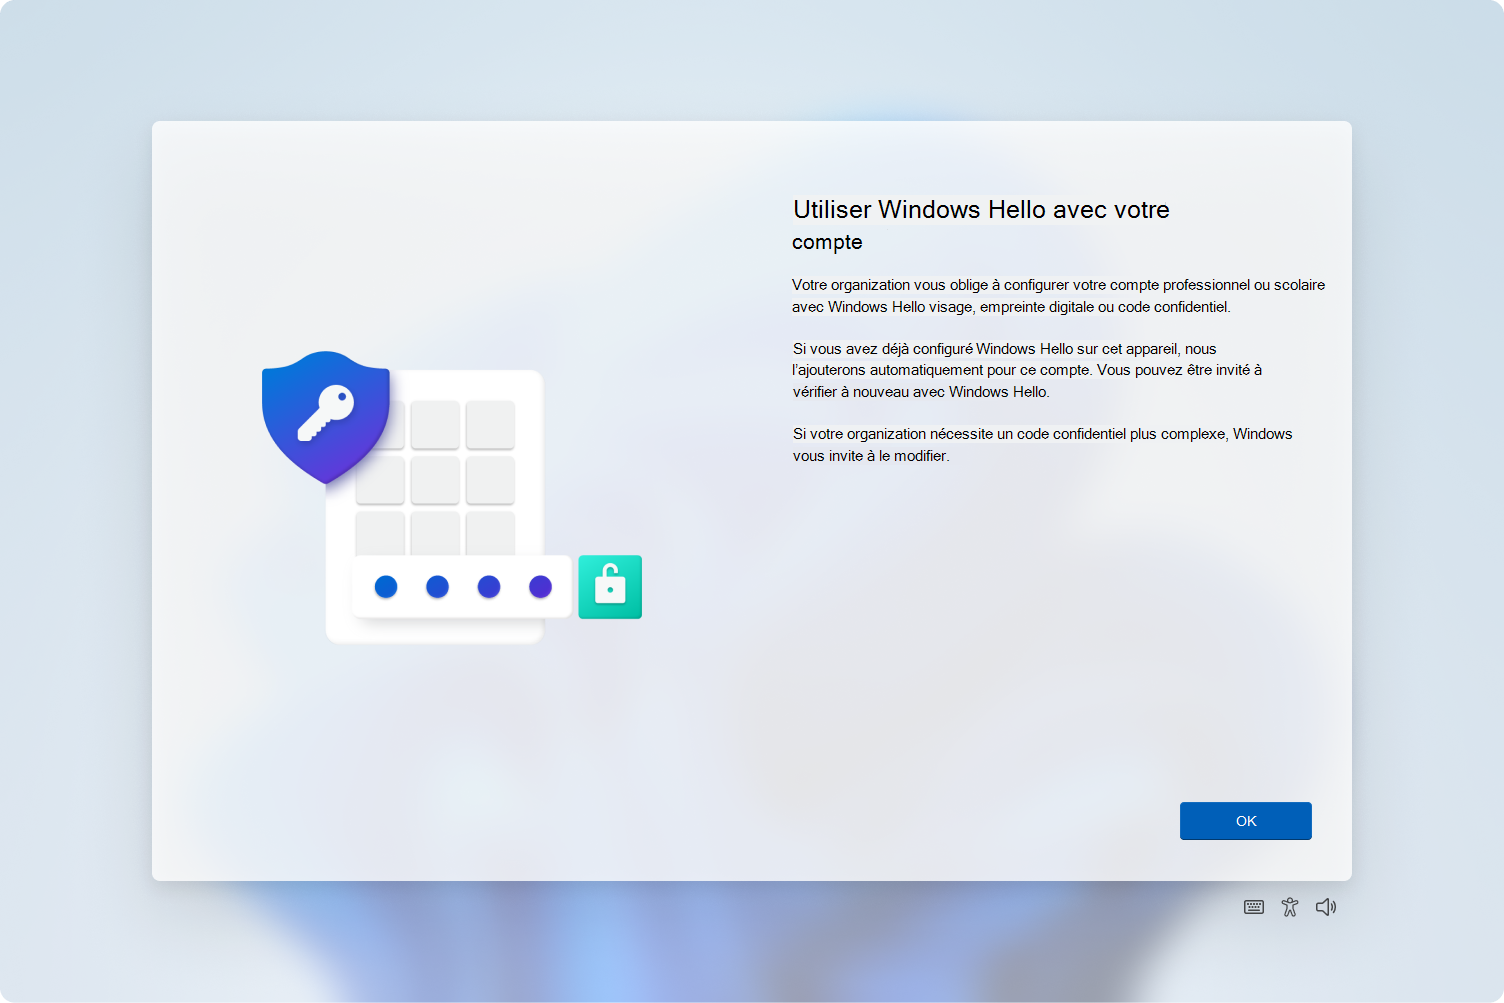 Capture d’écran de l’hôte d’expérience cloud invitant l’utilisateur à provisionner Windows Hello.